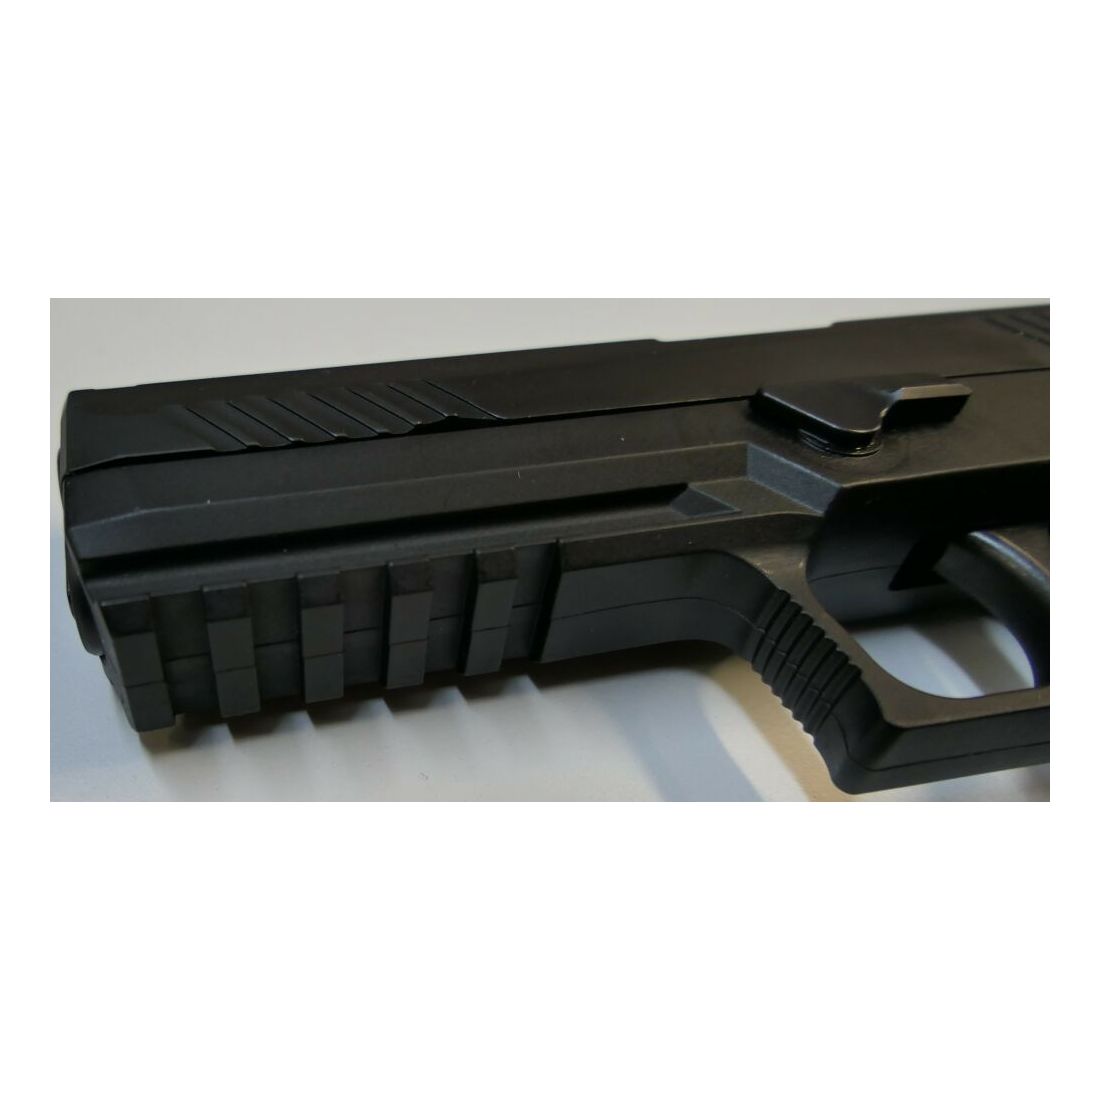 SIG SAUER	 Pistole SIG Sauer P320F im Kaliber 9mm Para (9x19) Inkl.Zubehör